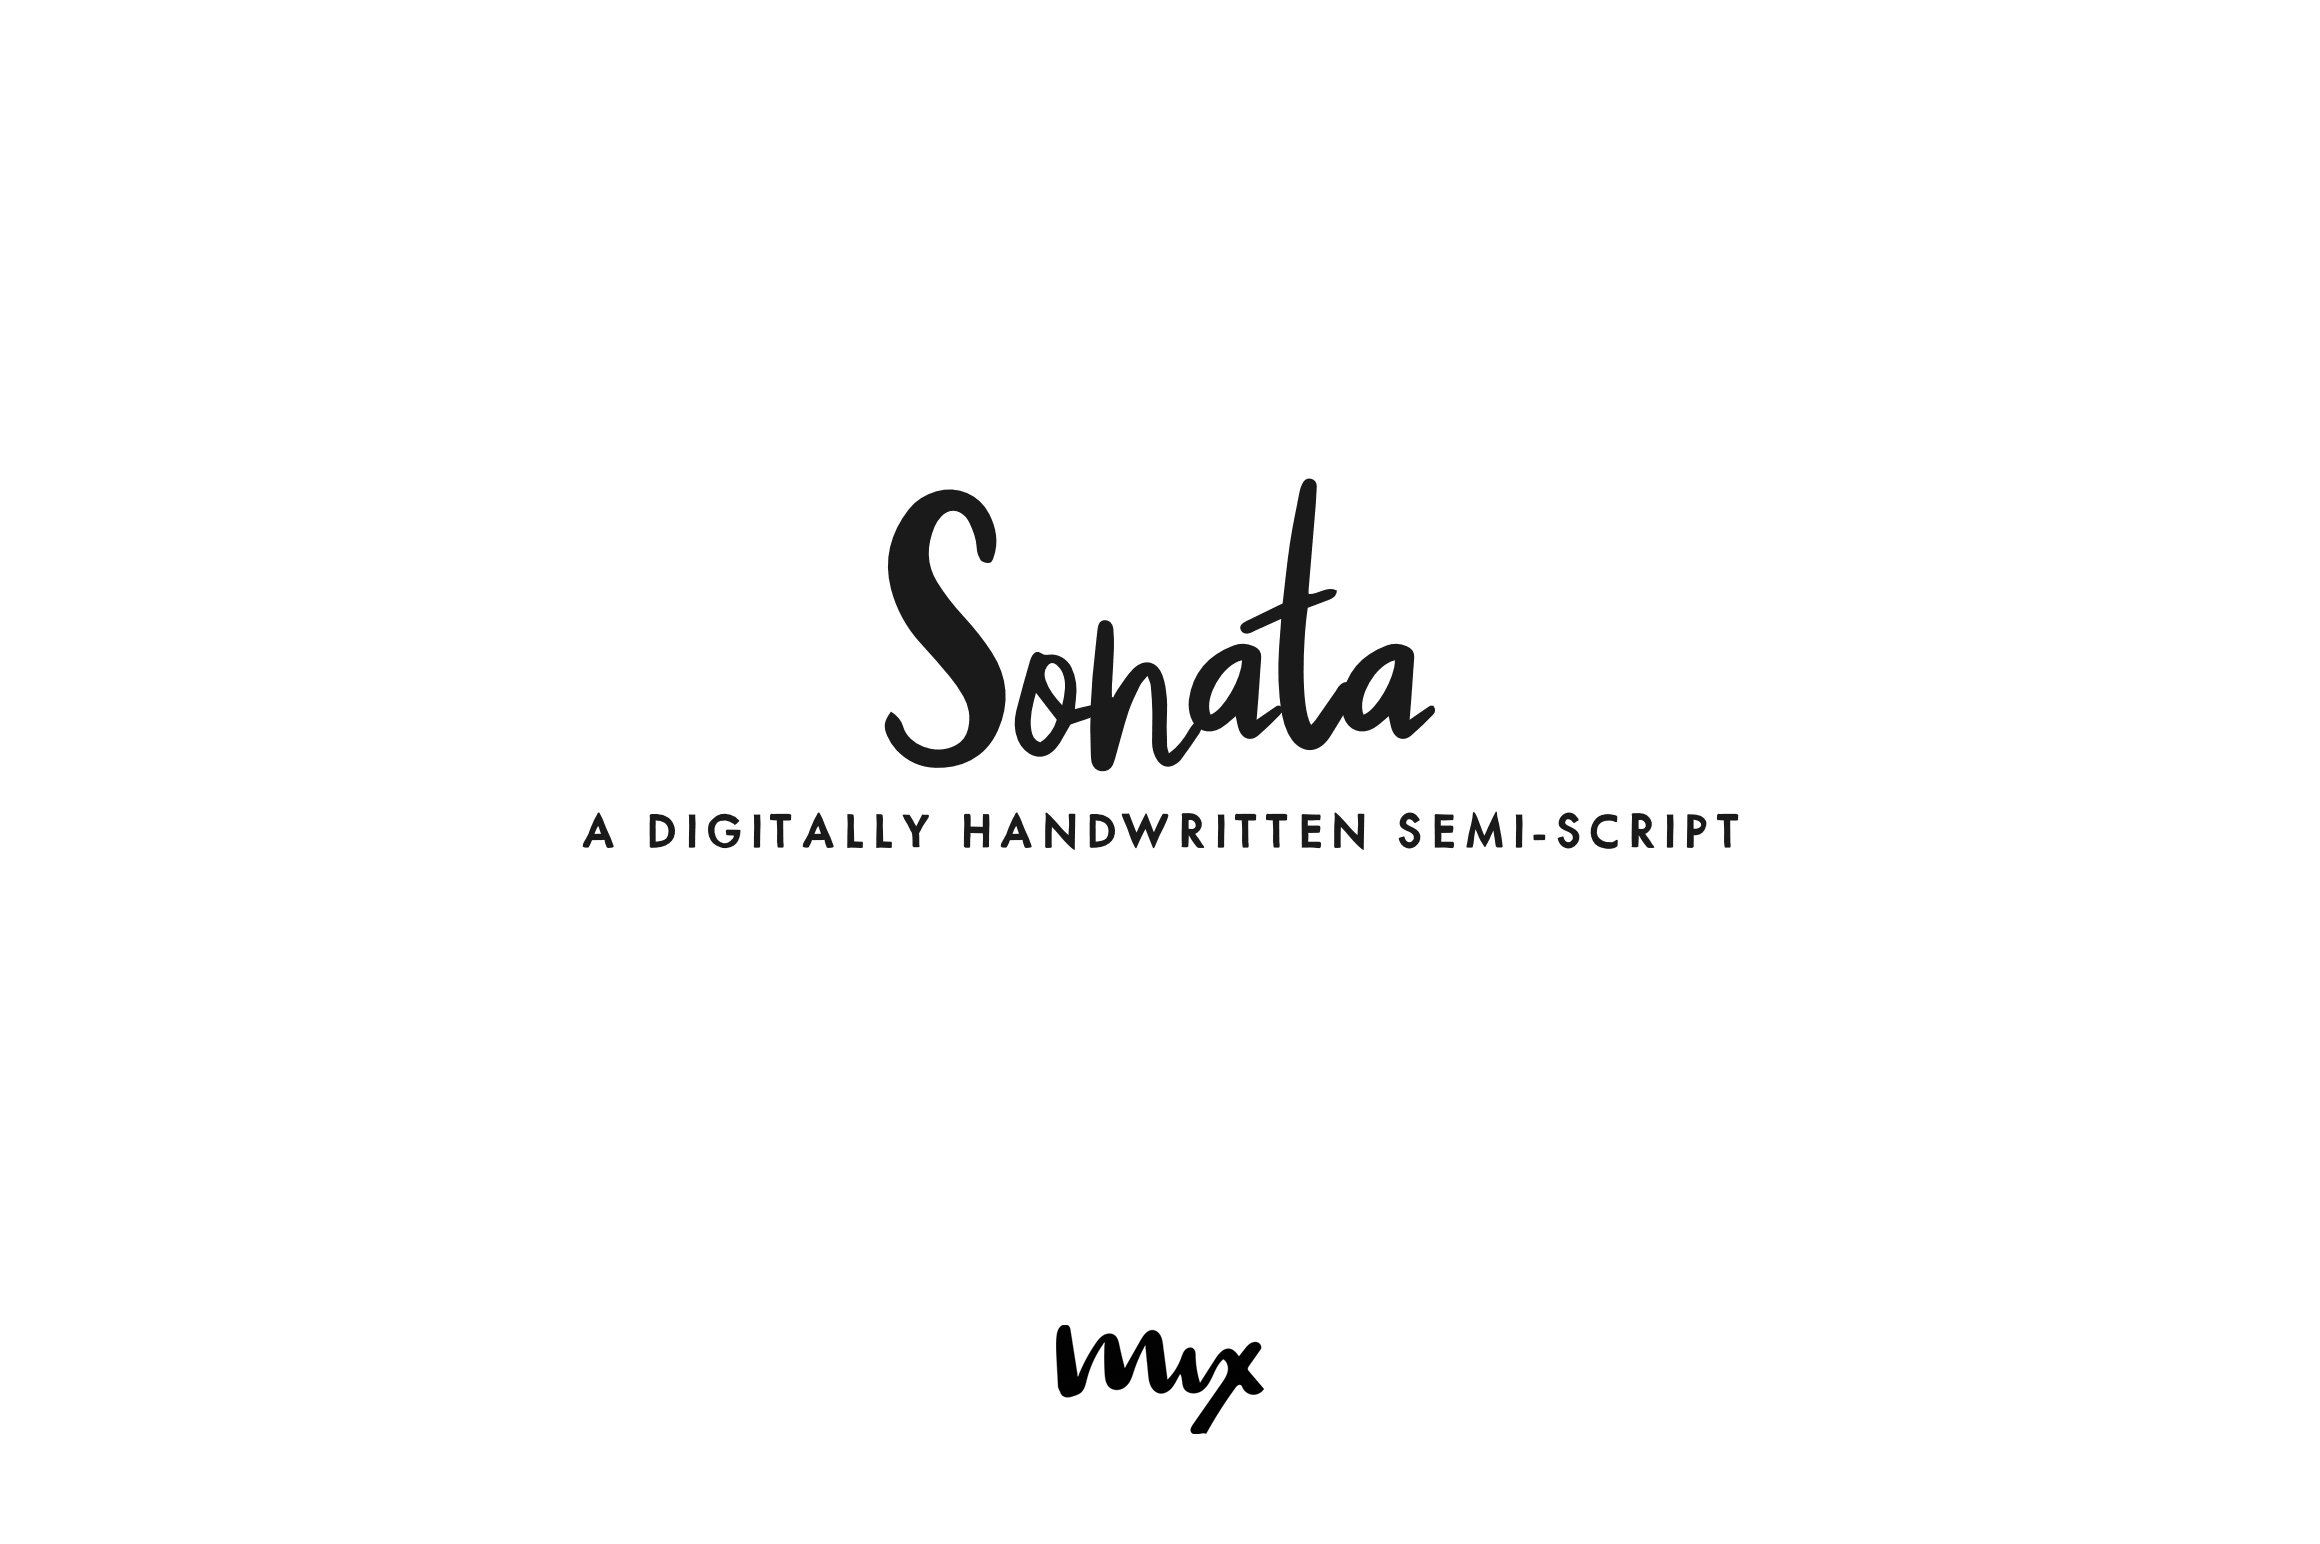 Sonata — A Handwritten Semi-script cover image.